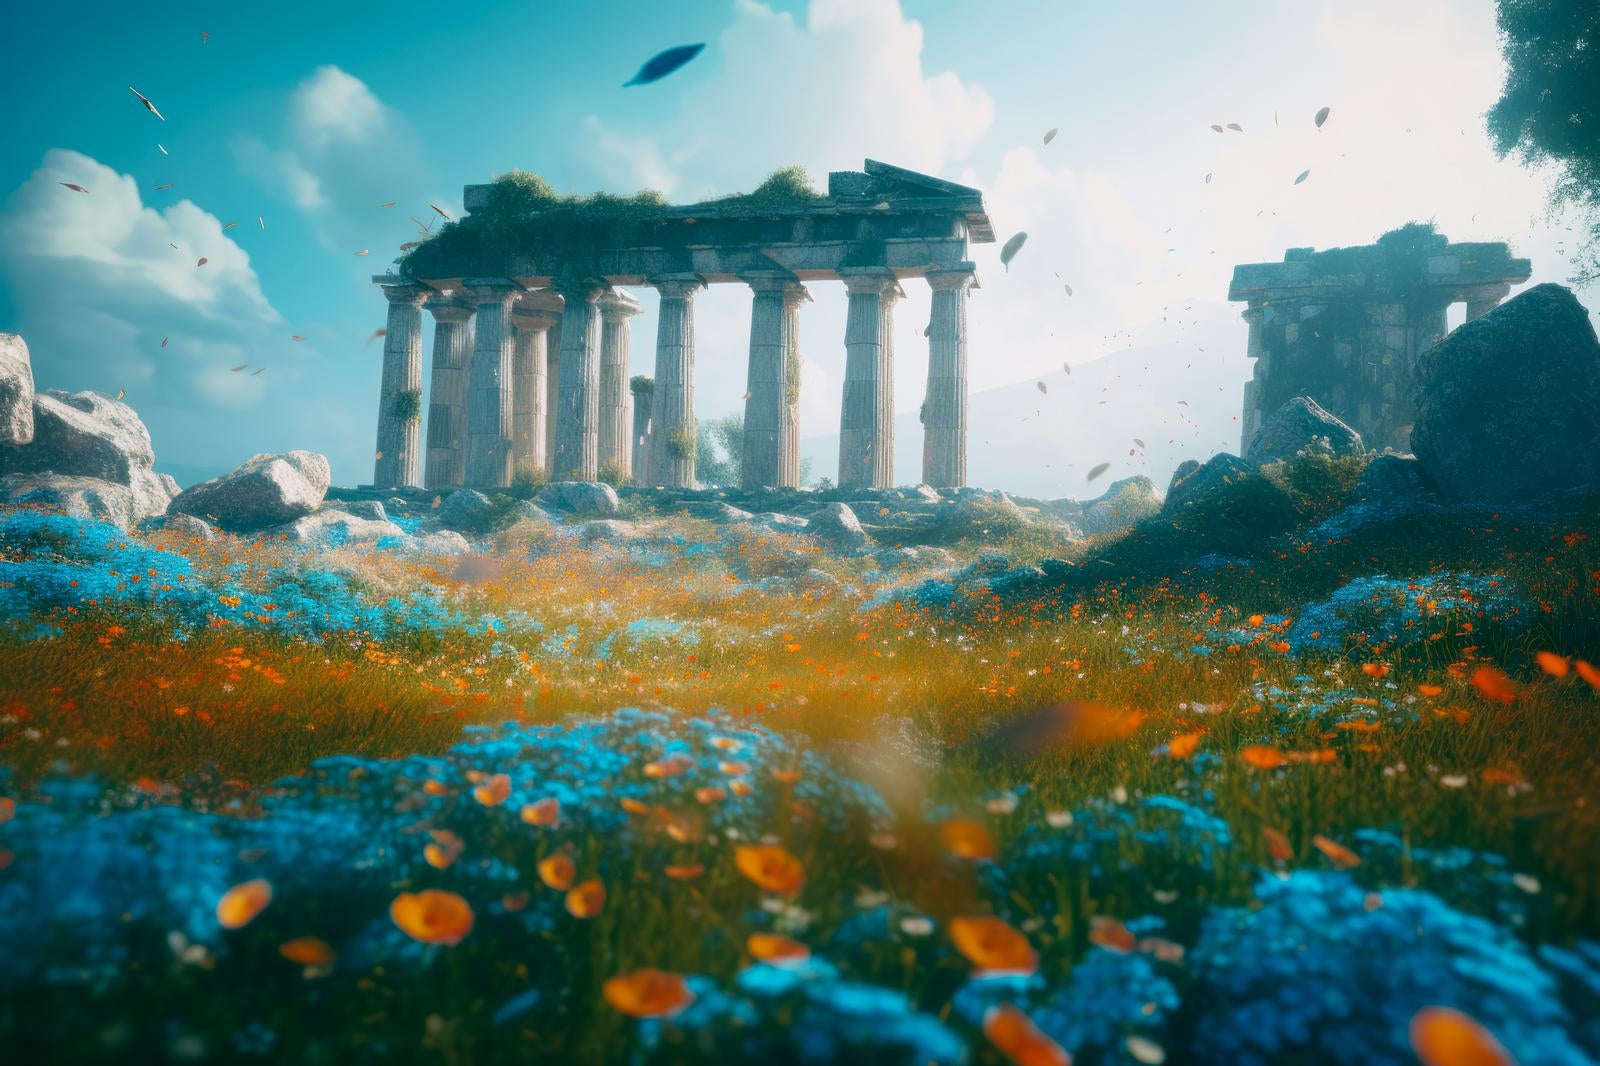 「古代遺跡の探求 青い草花、神殿、神話の謎を解く」の写真